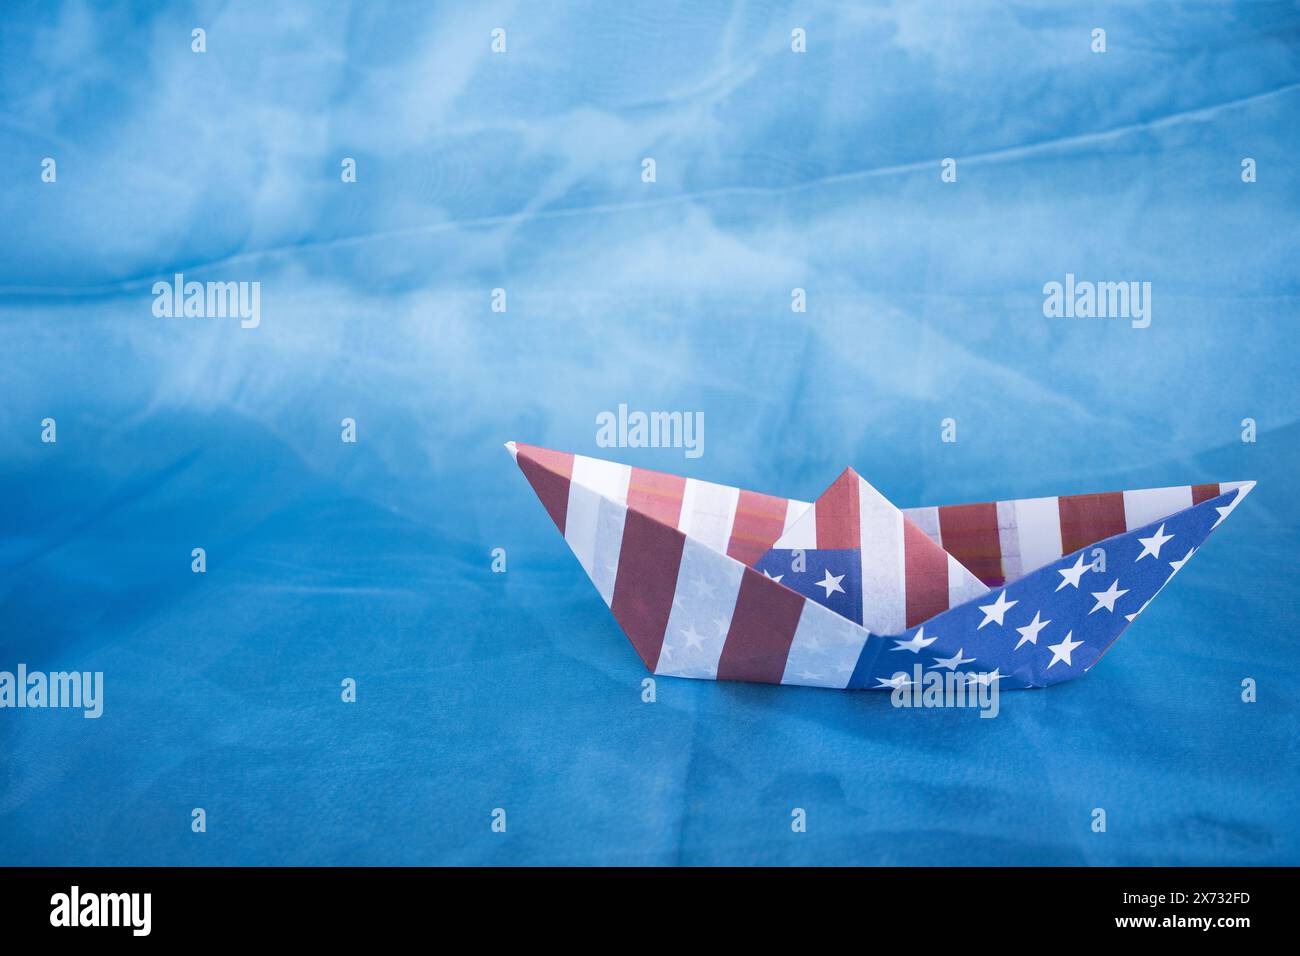 Bateau en papier avec drapeau américain sur fond bleu. Concept Columbus Day. Banque D'Images